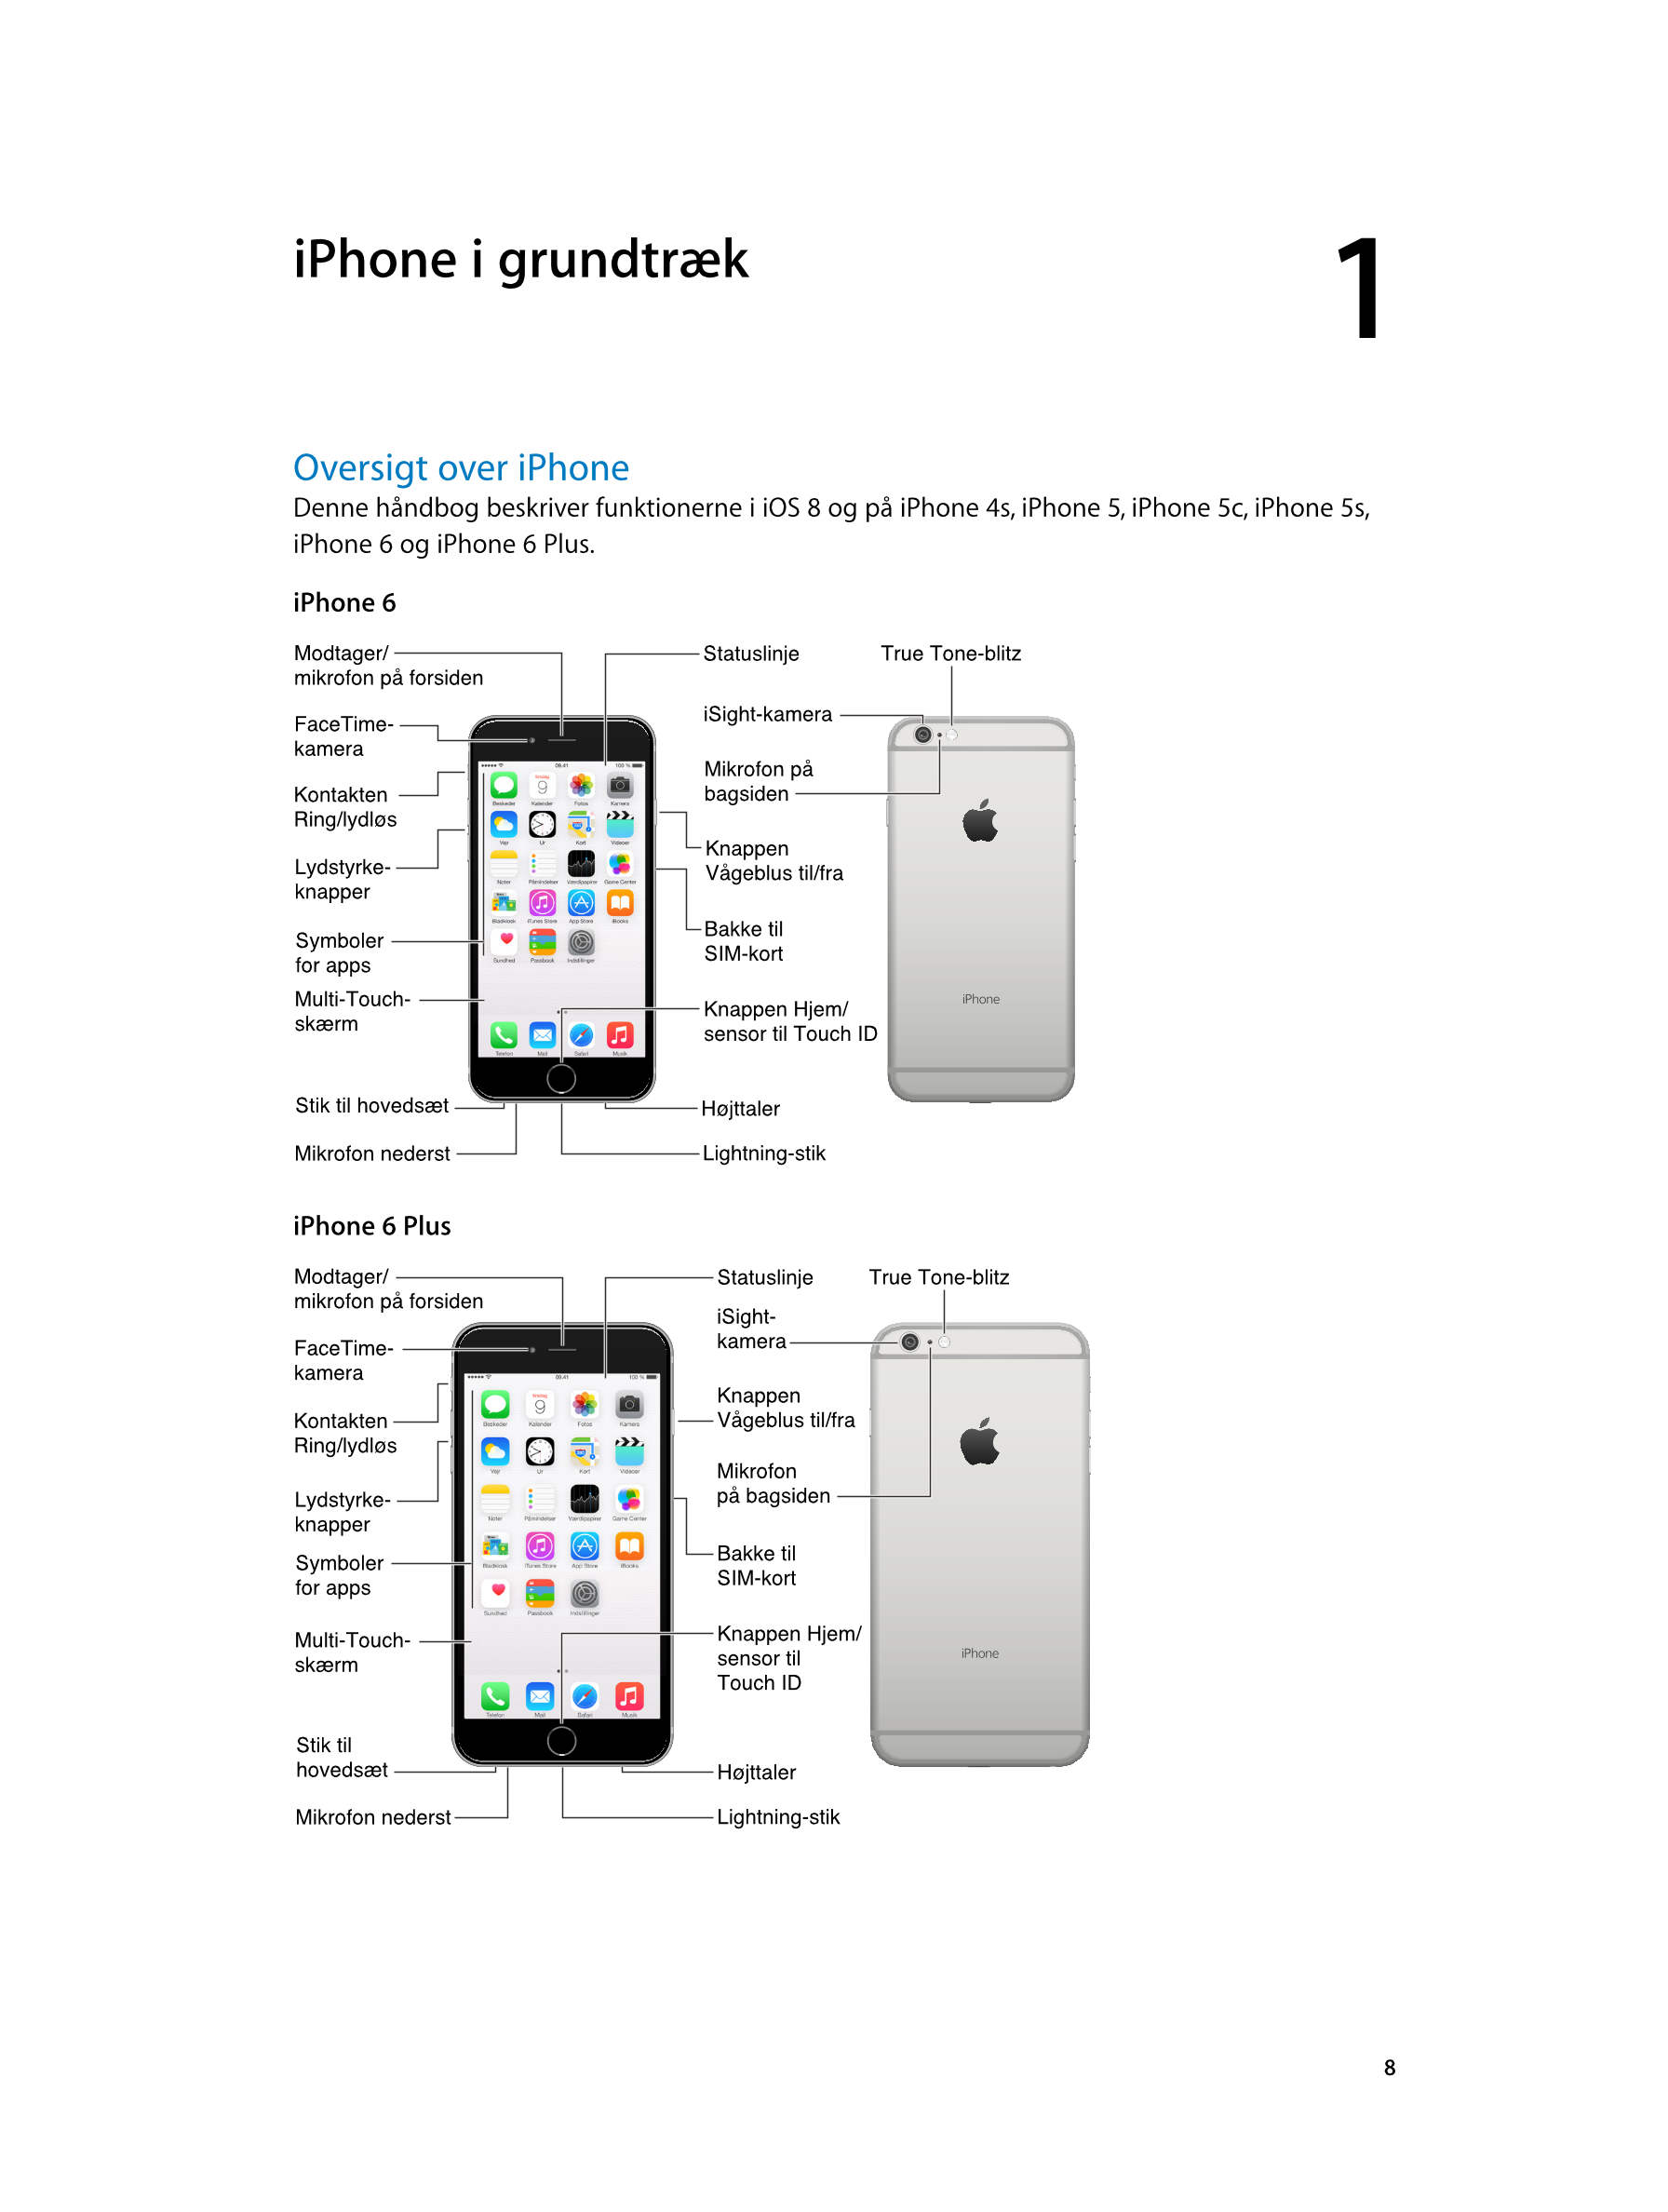   iPhone i grundtræk 1
Oversigt over iPhone
Denne håndbog beskriver funktionerne i iOS  8 og på iPhone  4s, iPhone  5, iPhone  5